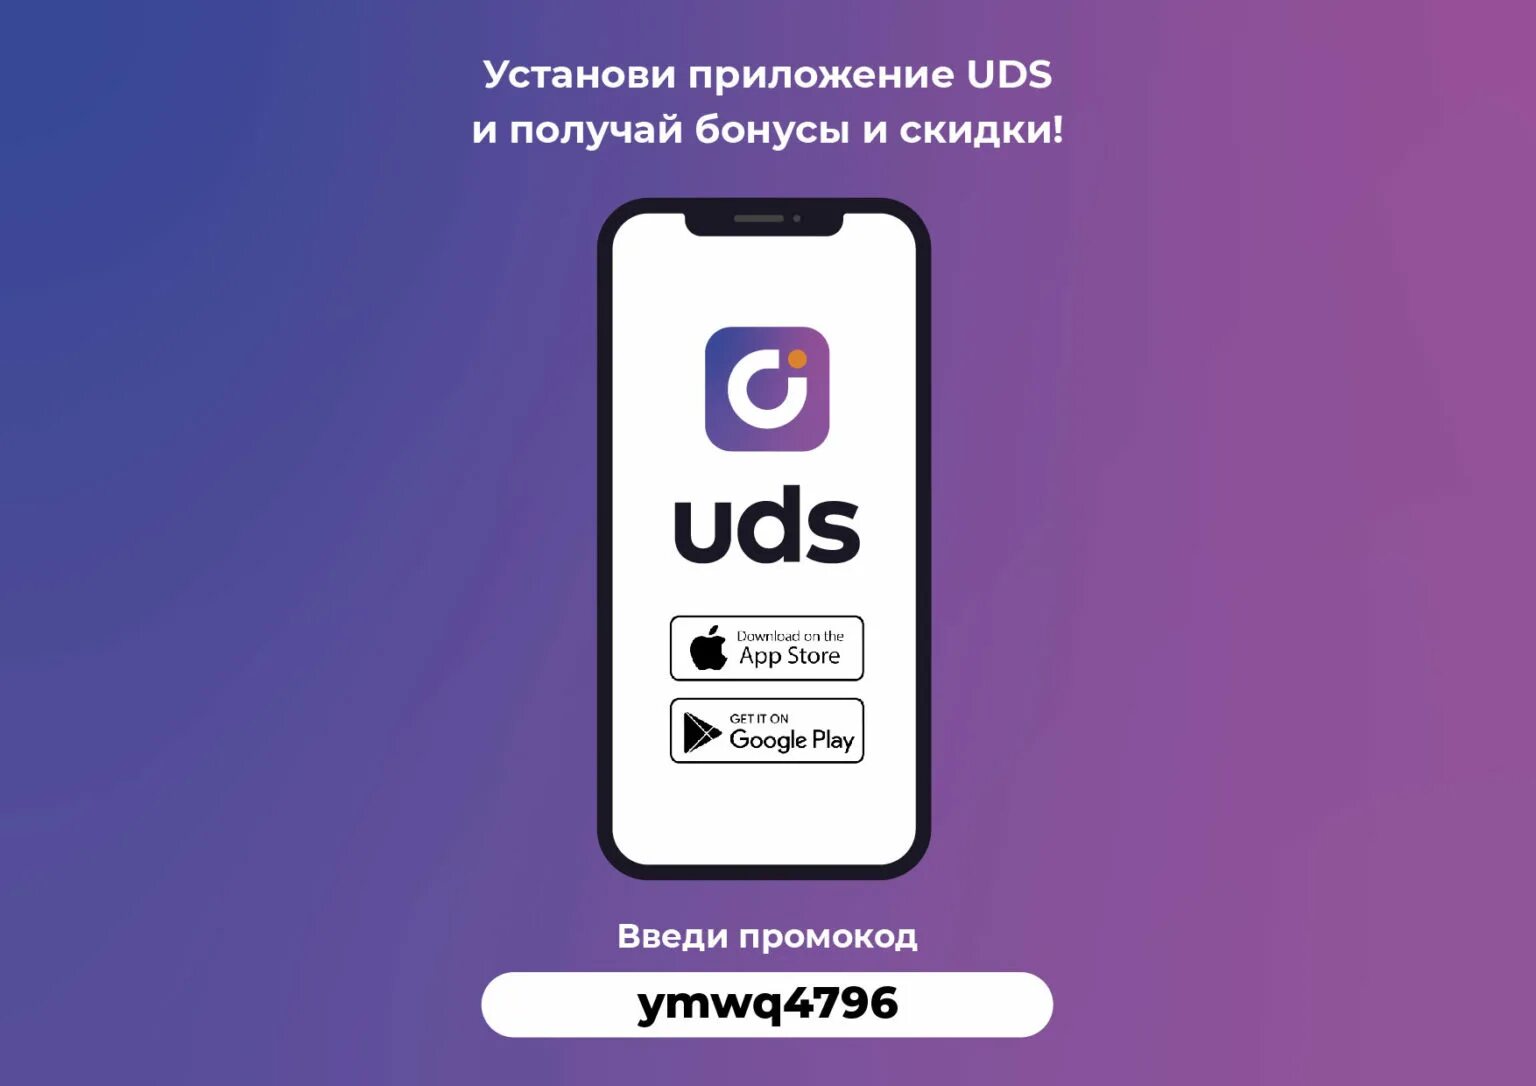 UDS приложение. UDS скидки. Система лояльности UDS. Бонусы ЮДС. Https uds app